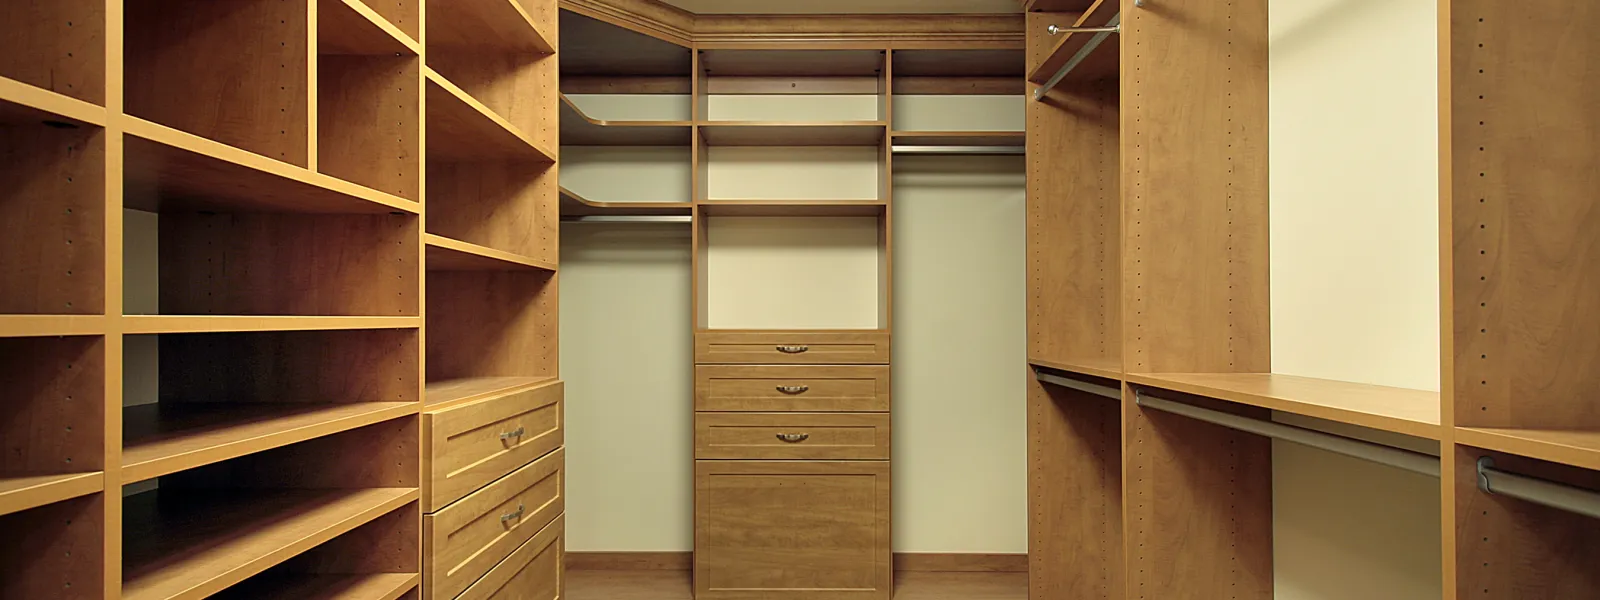 custom closet with shelves